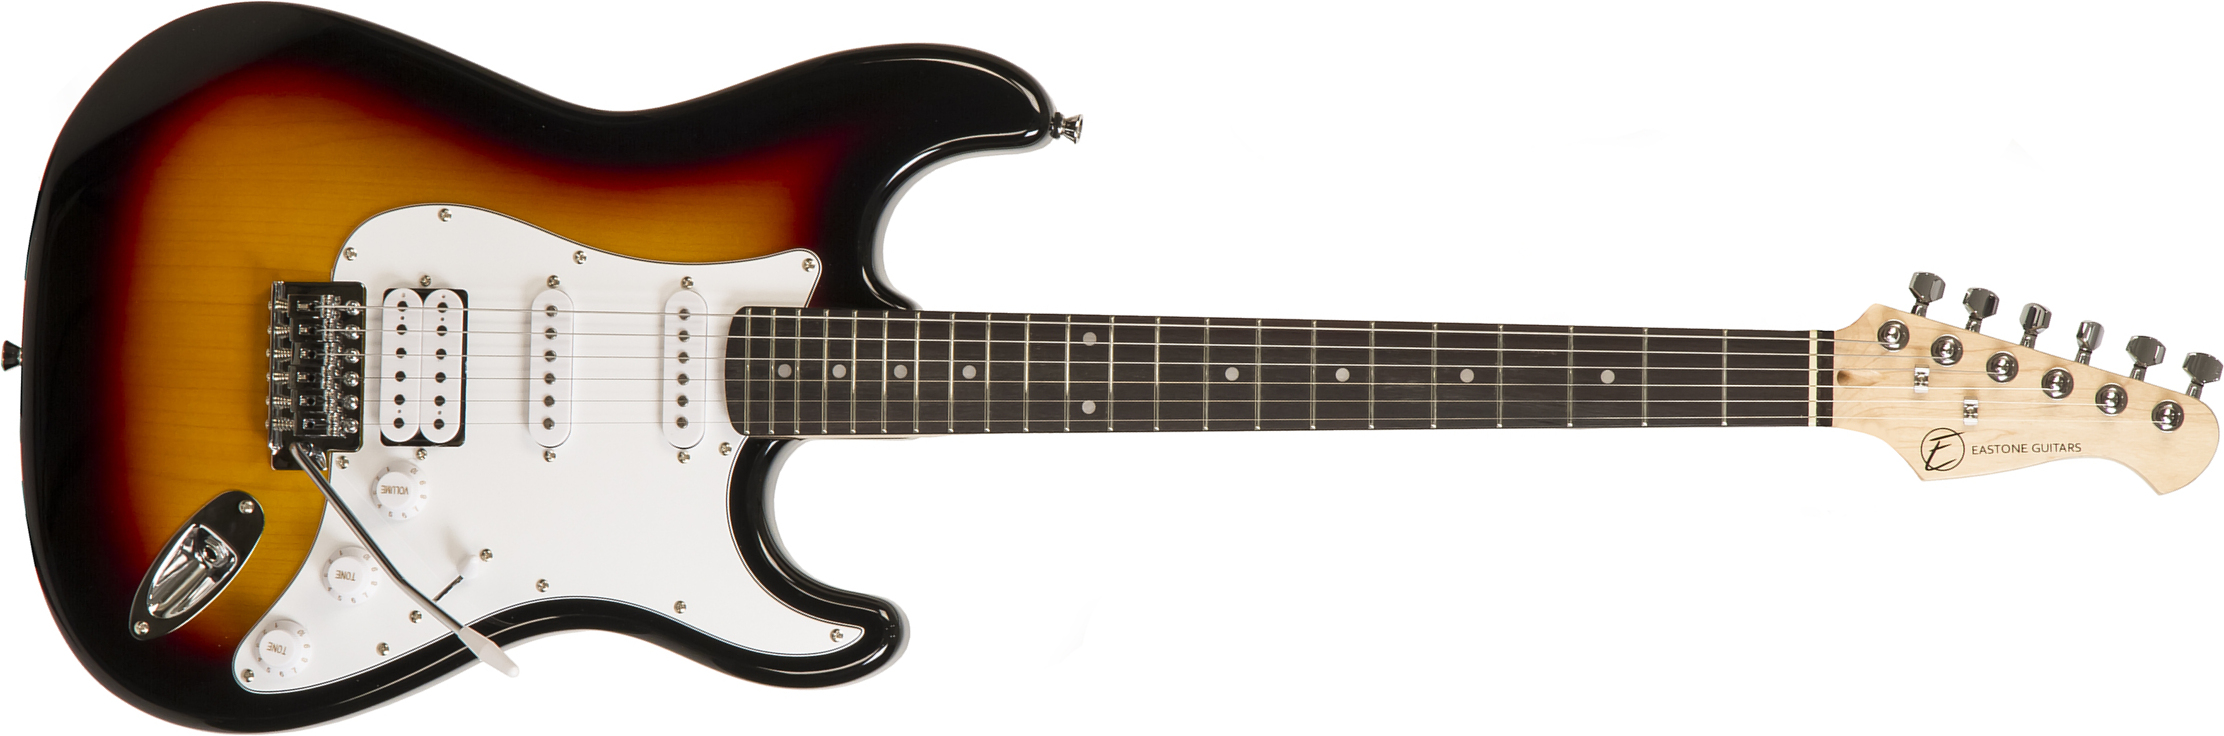 Eastone Str80t 3ts Hss Trem Pur - Sunburst - Guitarra eléctrica con forma de str. - Main picture